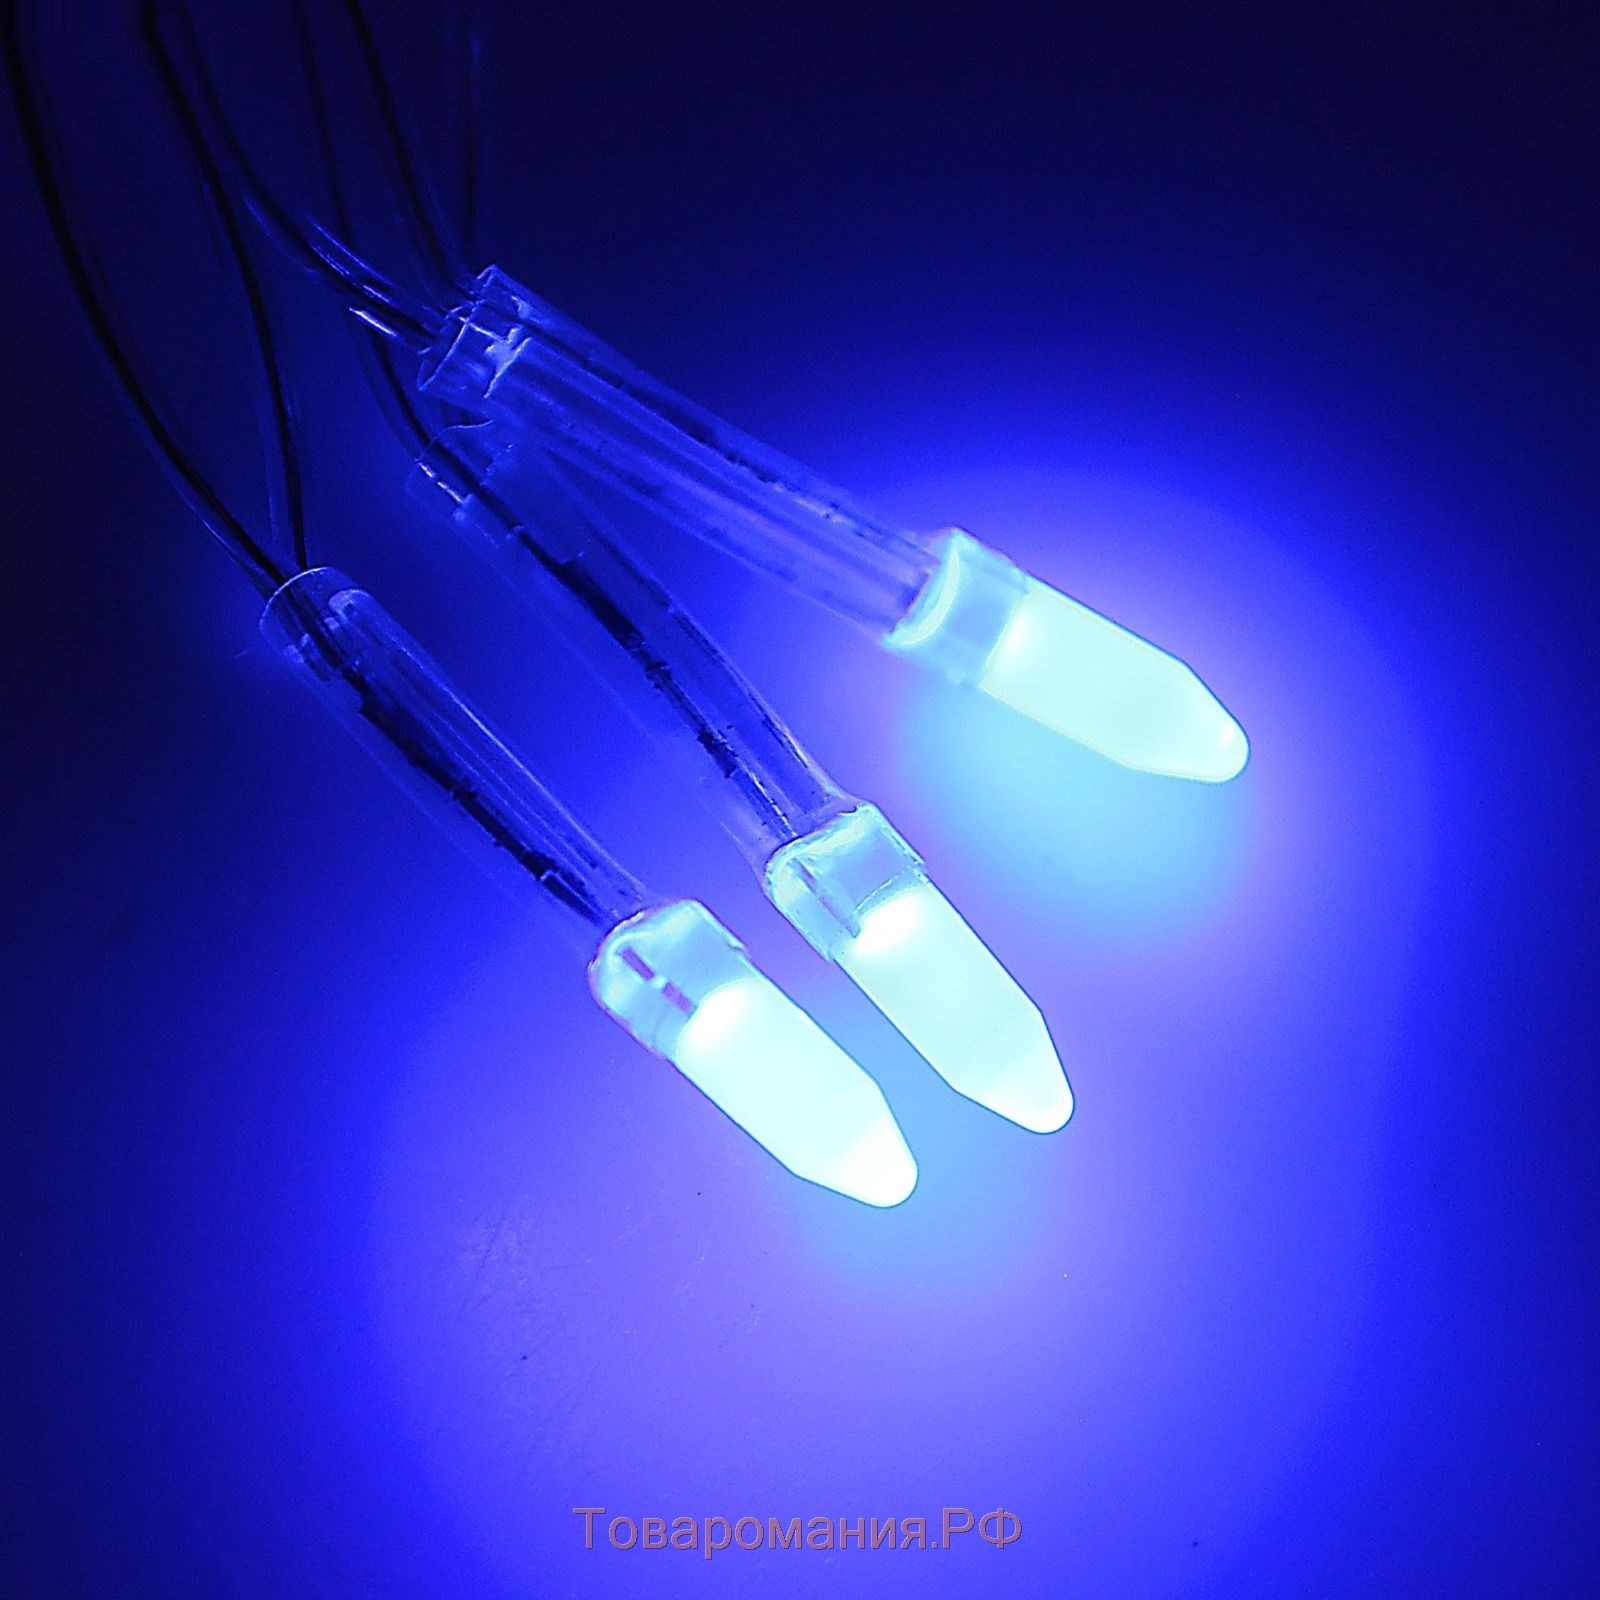 Гирлянда «Нить» 10 м с насадками «Игла», IP20, прозрачная нить, 100 LED, свечение синее, 8 режимов, 220 В